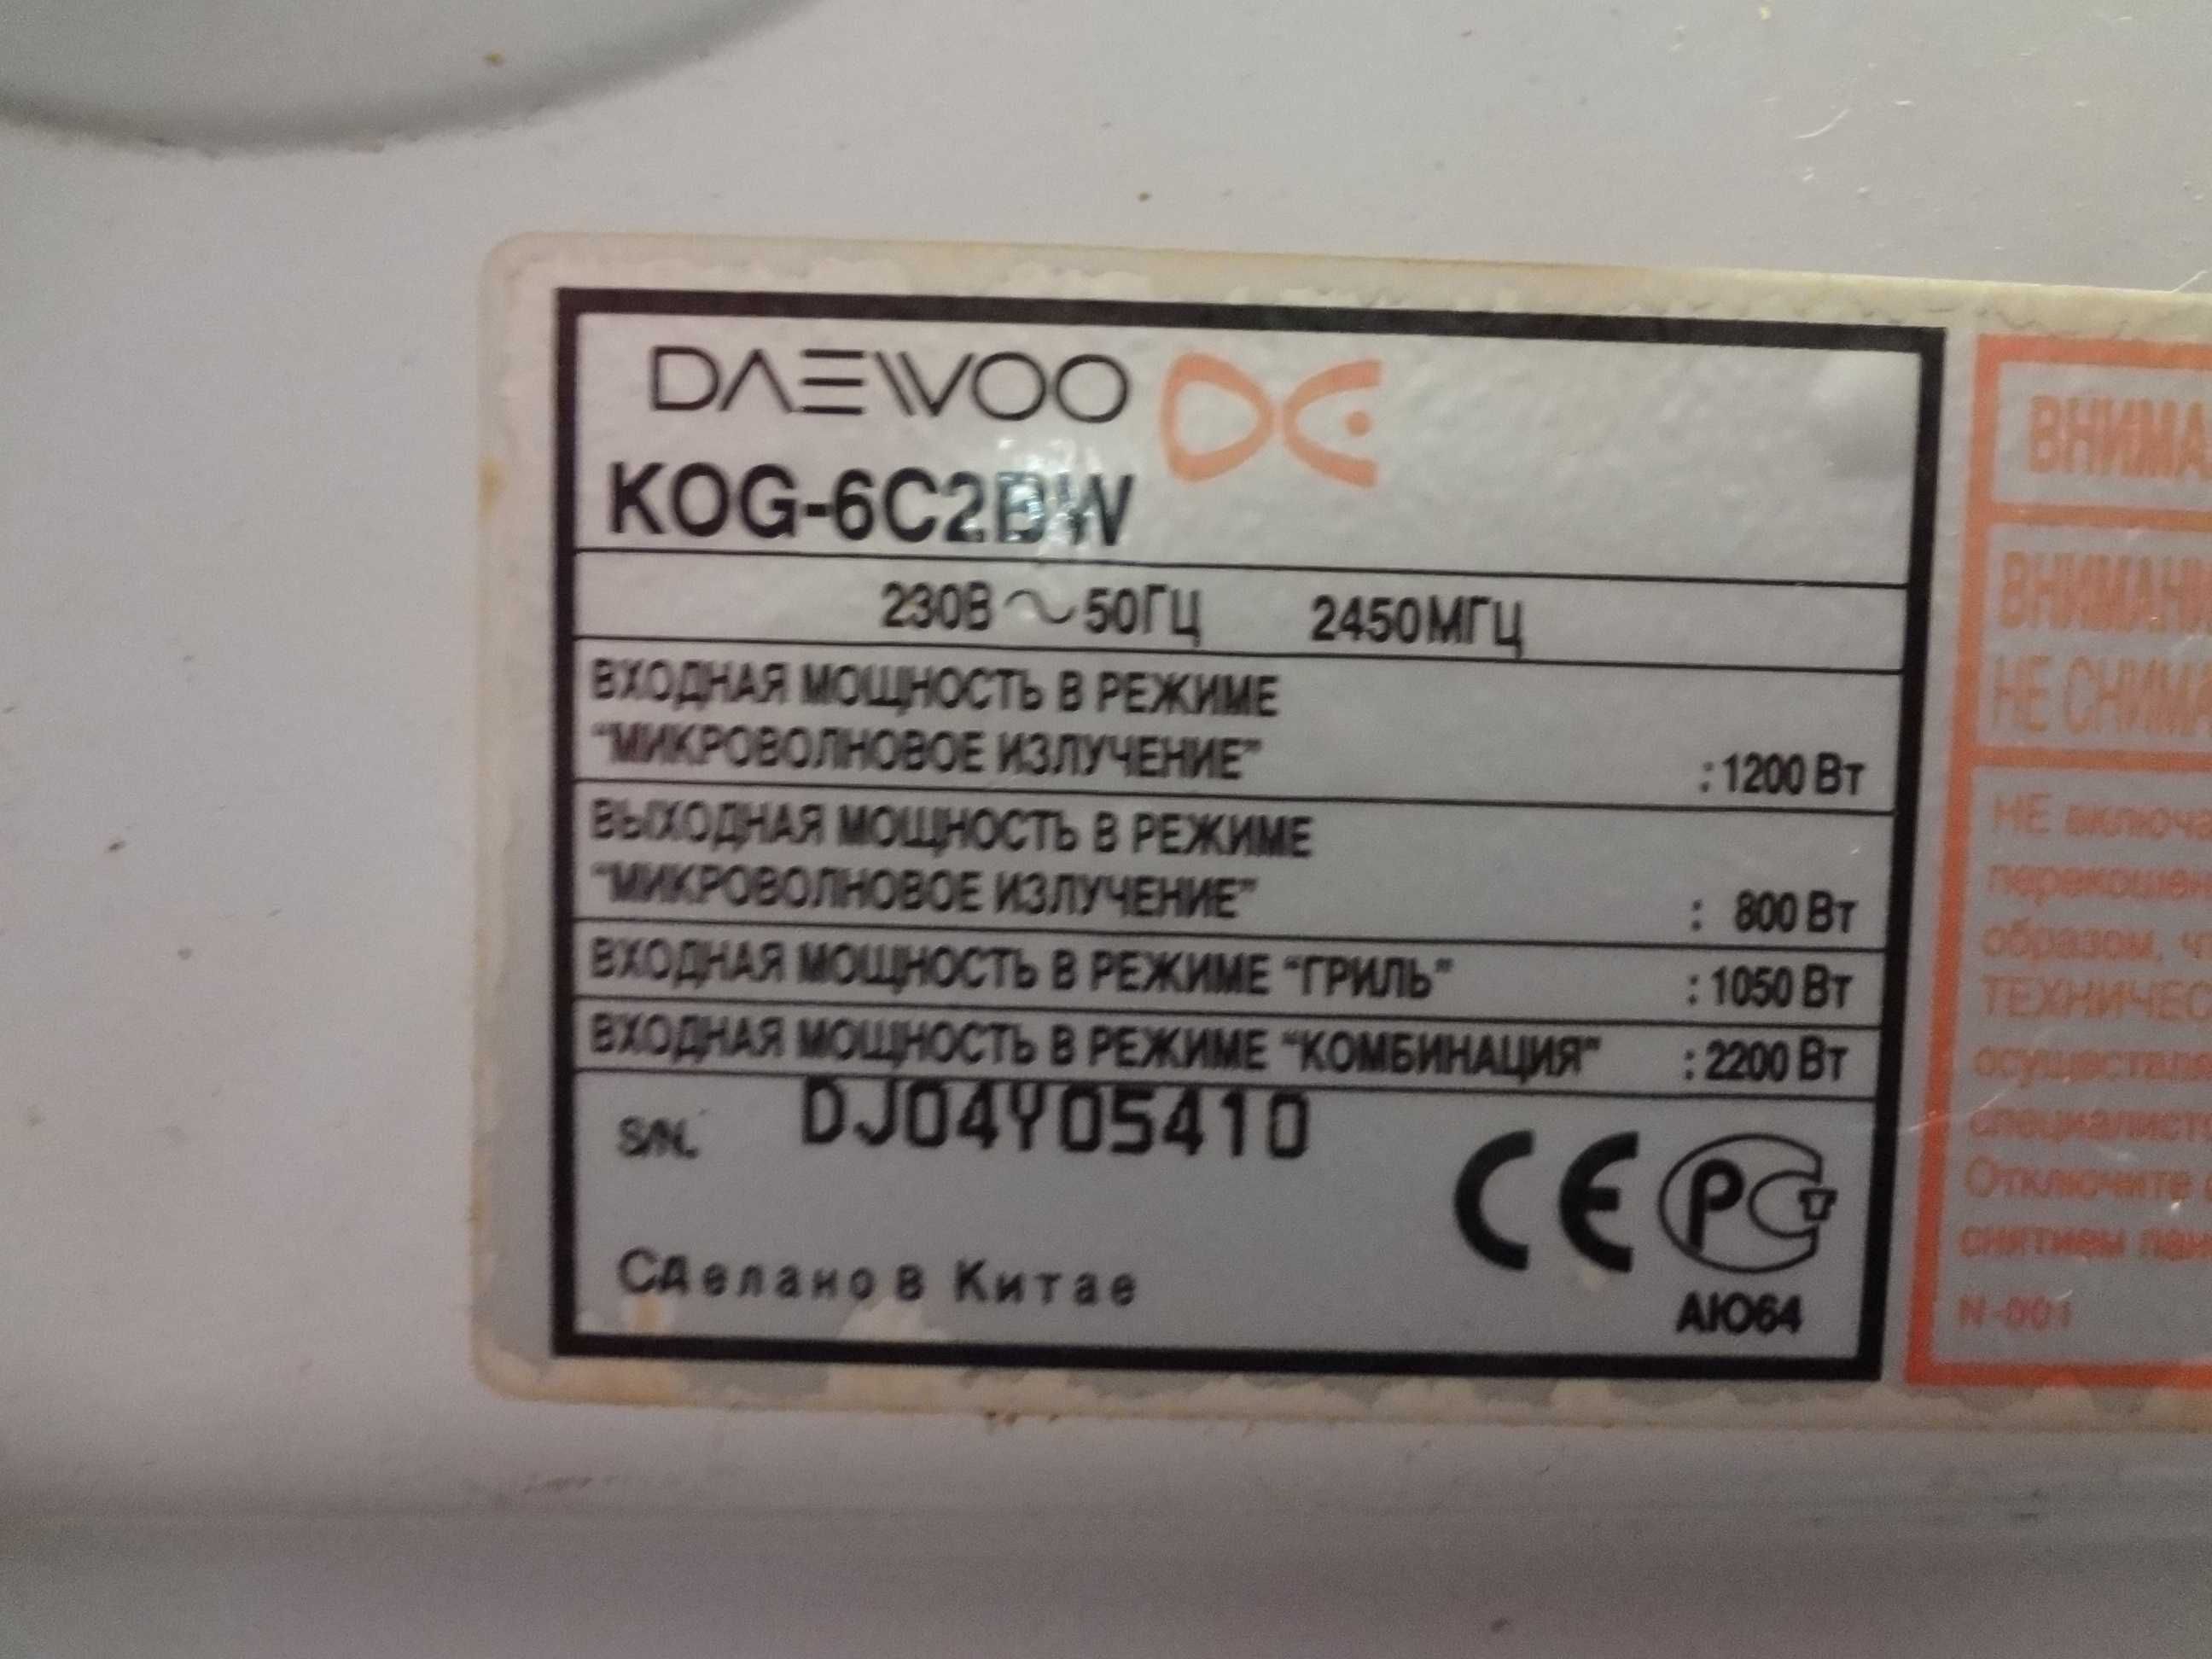 Продам микроволновую печь по запчастям. Daewoo KOG-6C2BW.